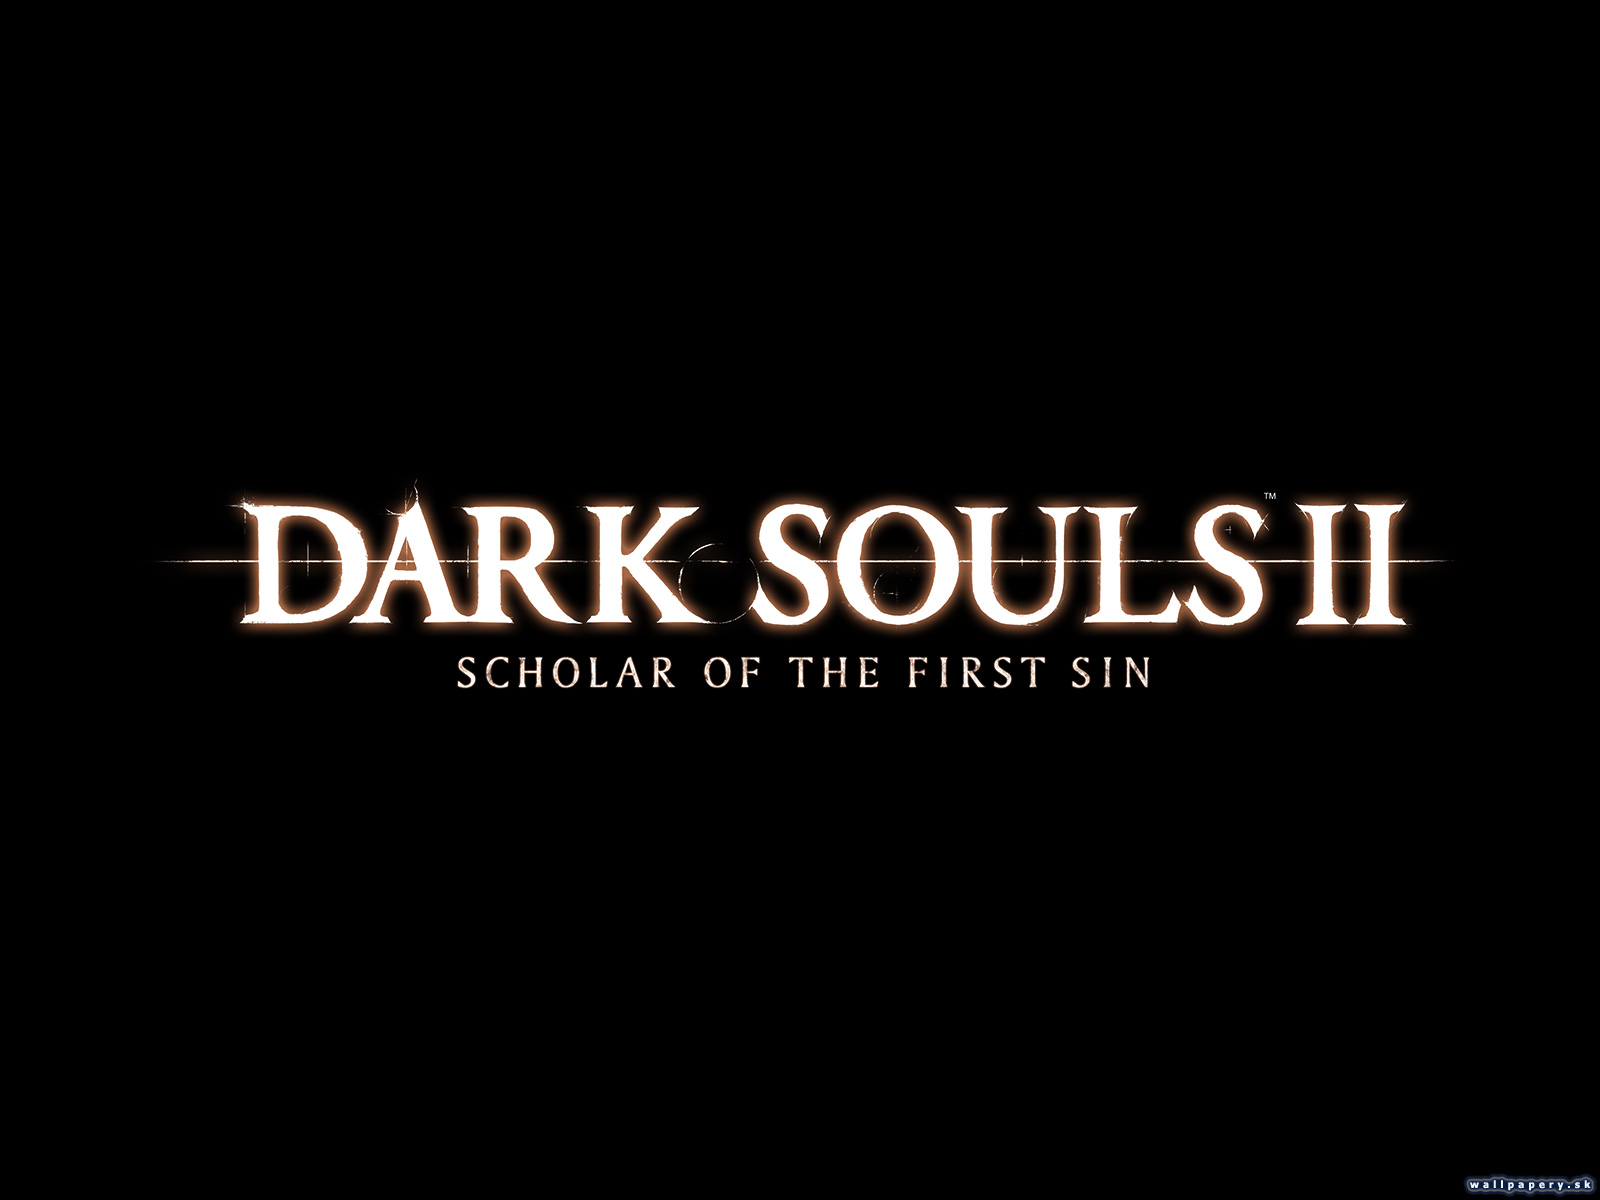 Dark Souls II: Scholar of the First Sin - wallpaper 2